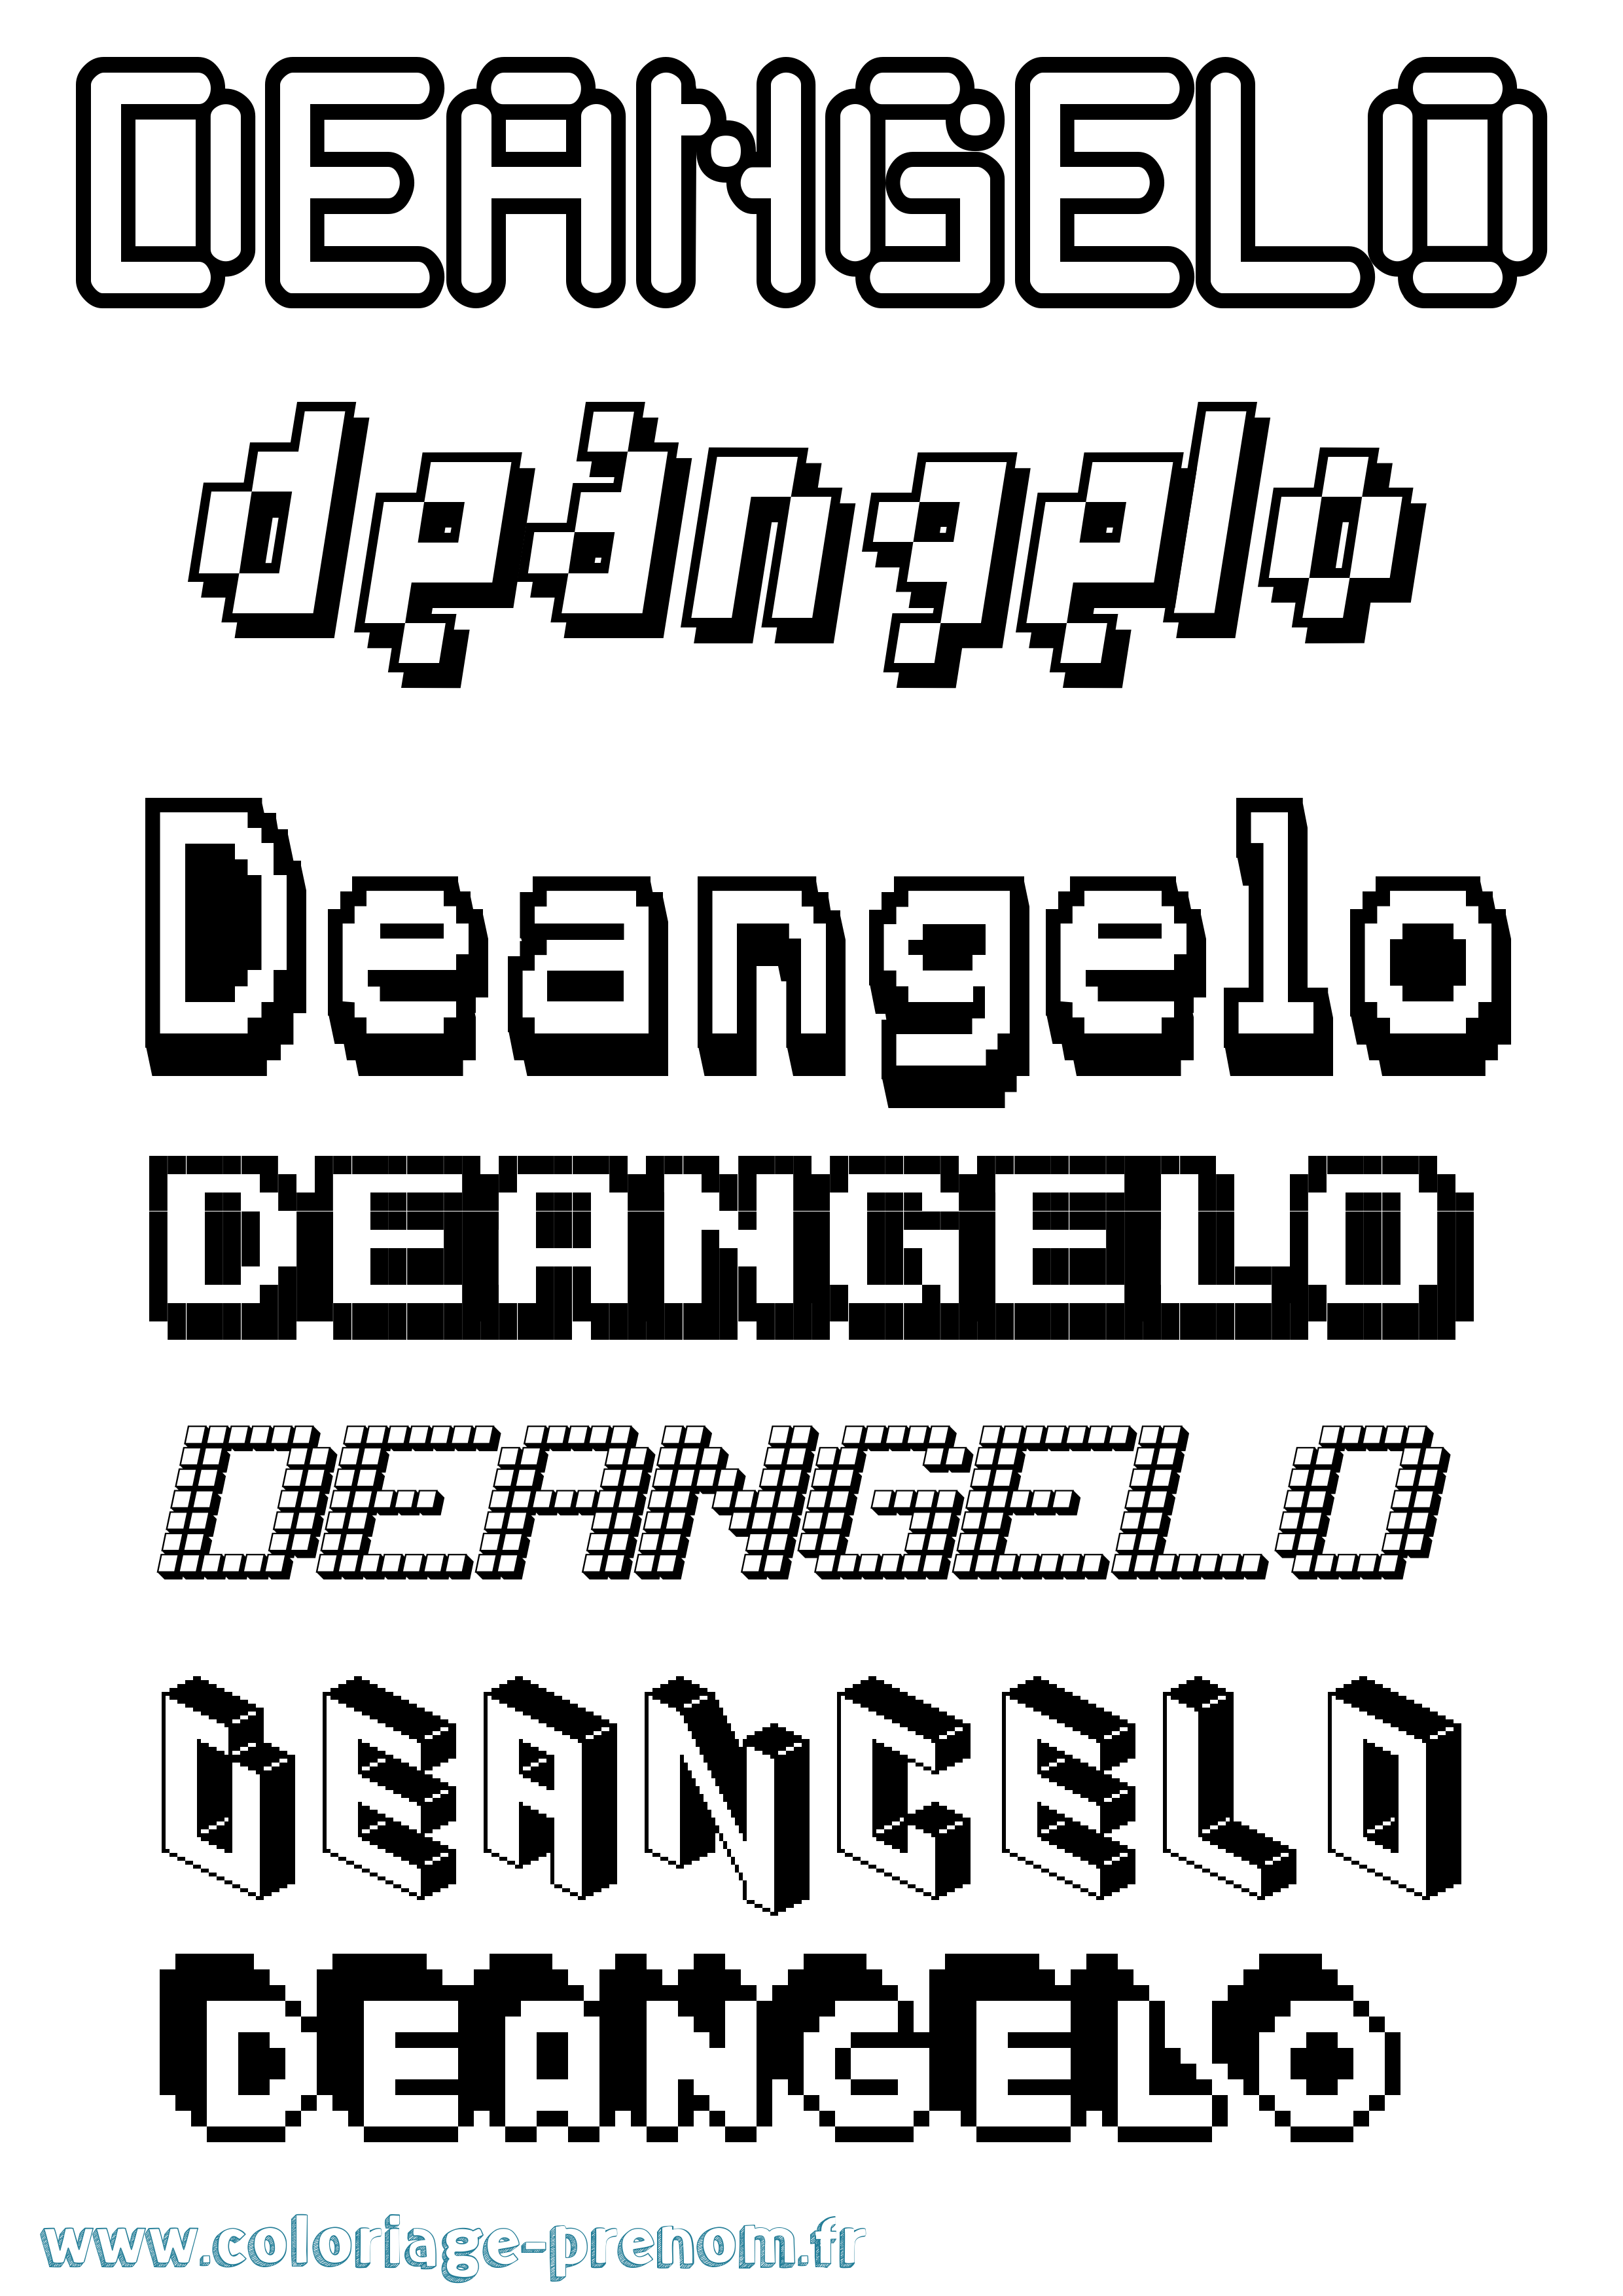 Coloriage prénom Deangelo Pixel